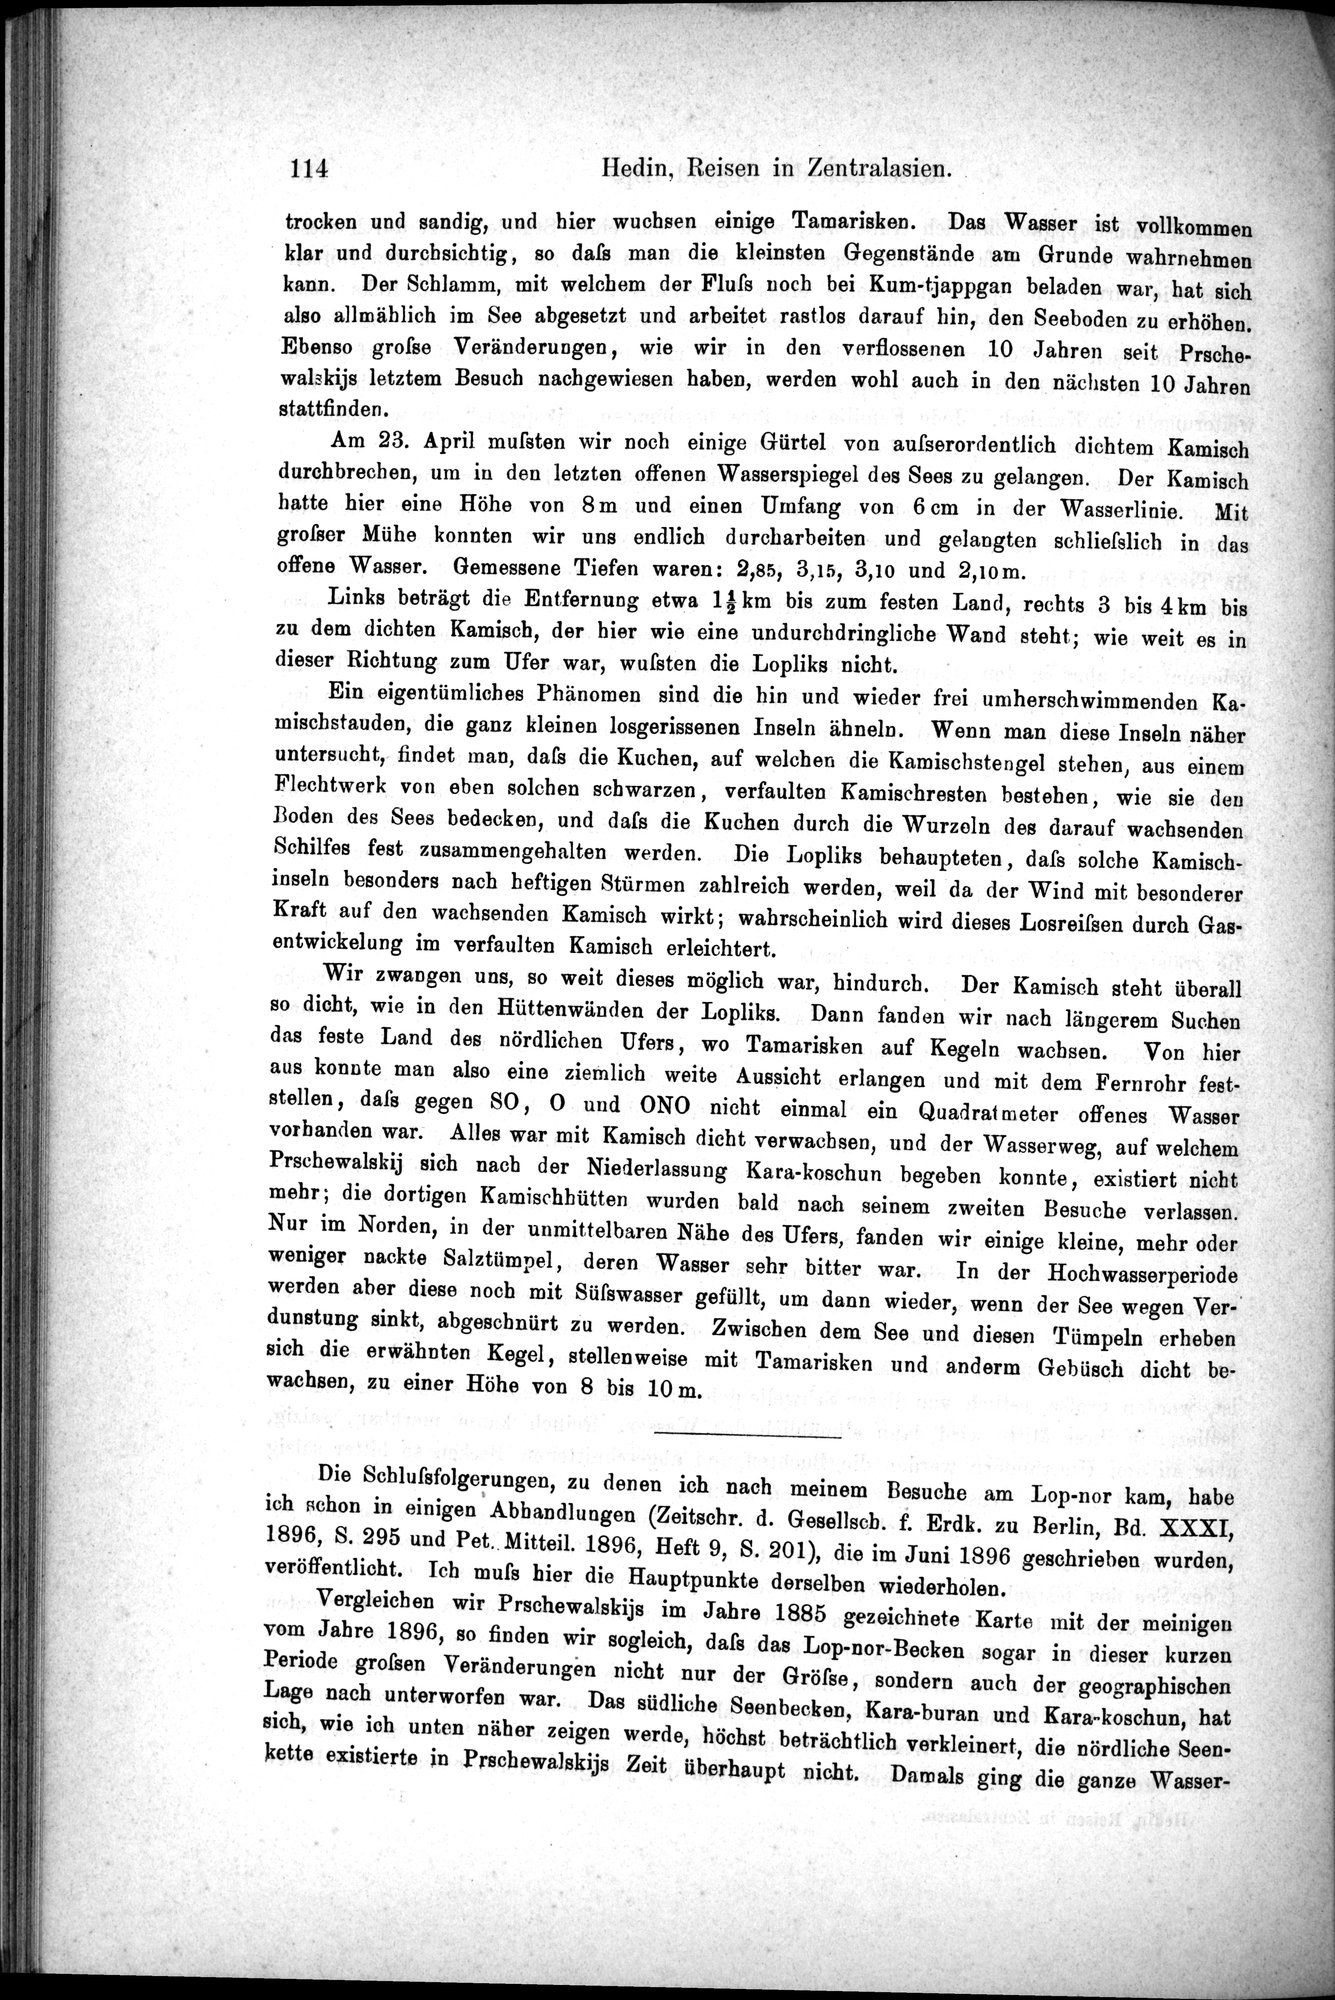 Die Geographische-Wissenschaftlichen Ergebnisse meiner Reisen in Zentralasien, 1894-1897 : vol.1 / Page 126 (Grayscale High Resolution Image)